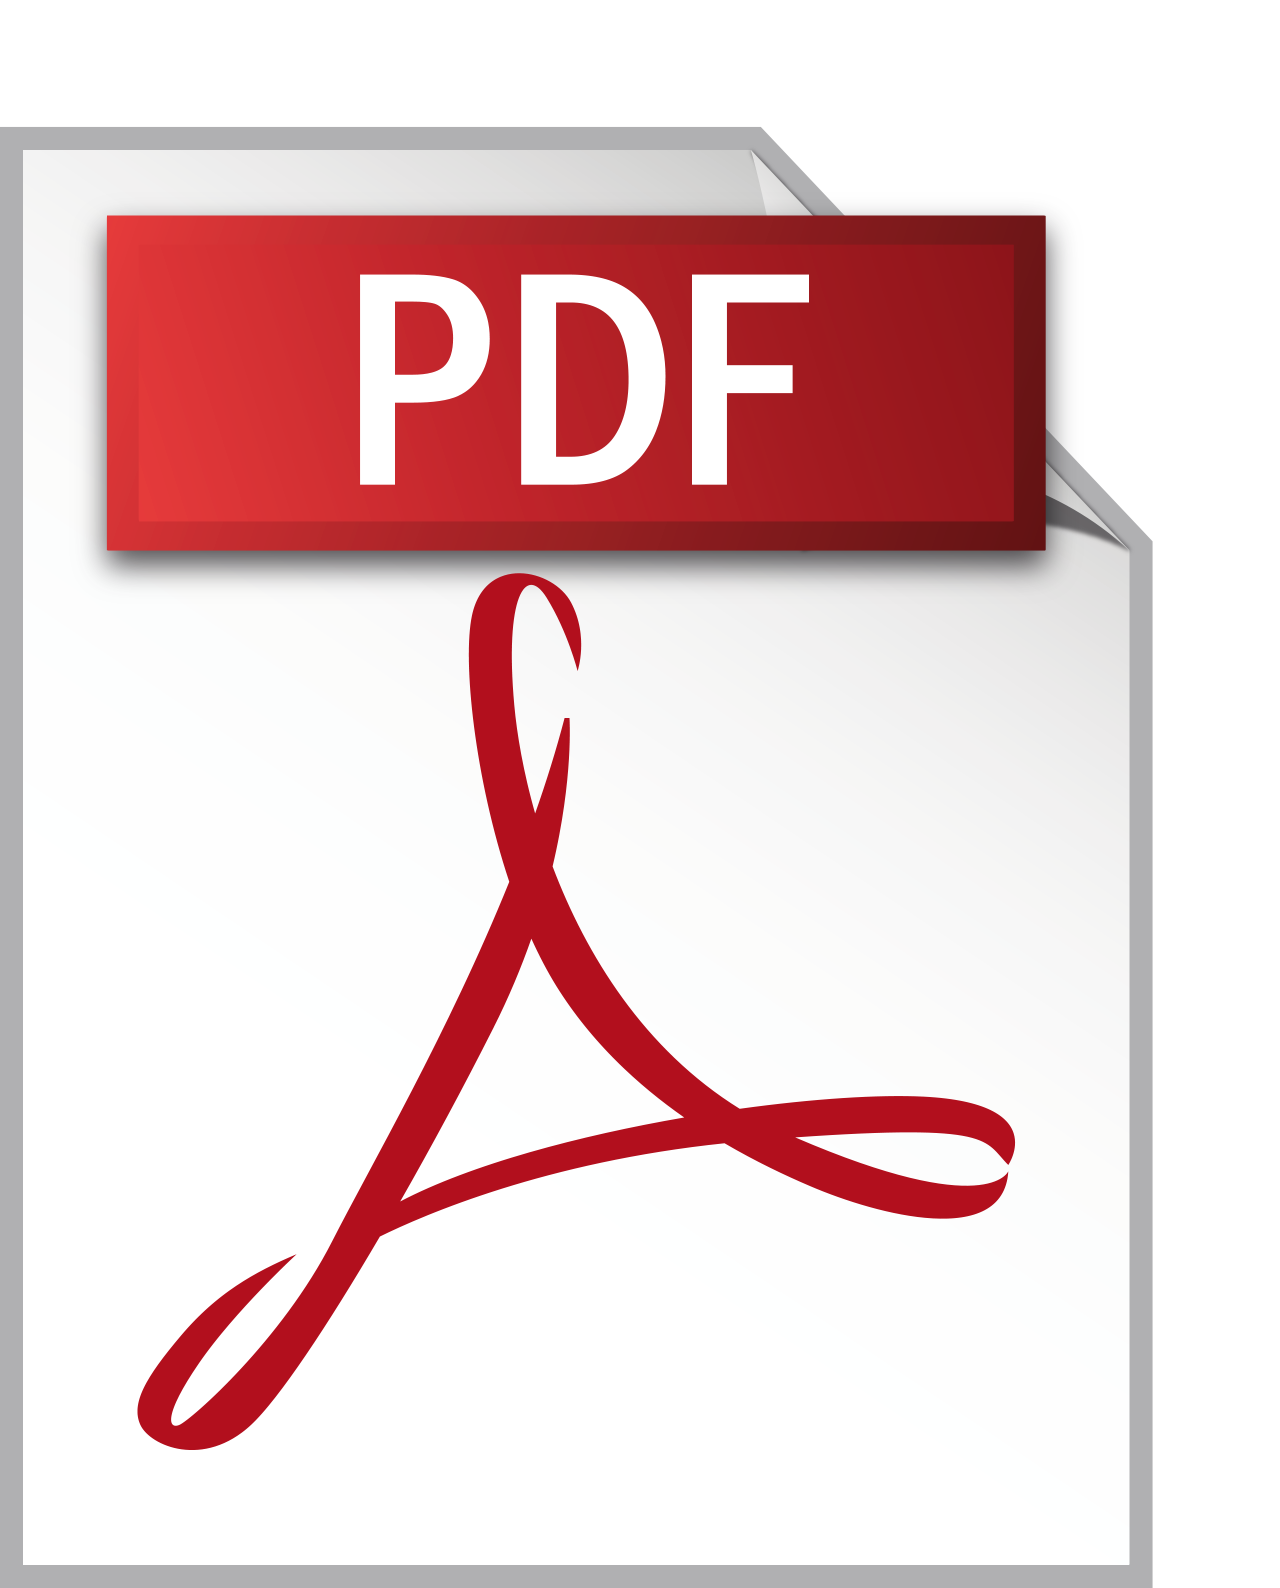 Pdf icon. Пдф файл. Иконка pdf. Значок pdf файла. Значок документа pdf.